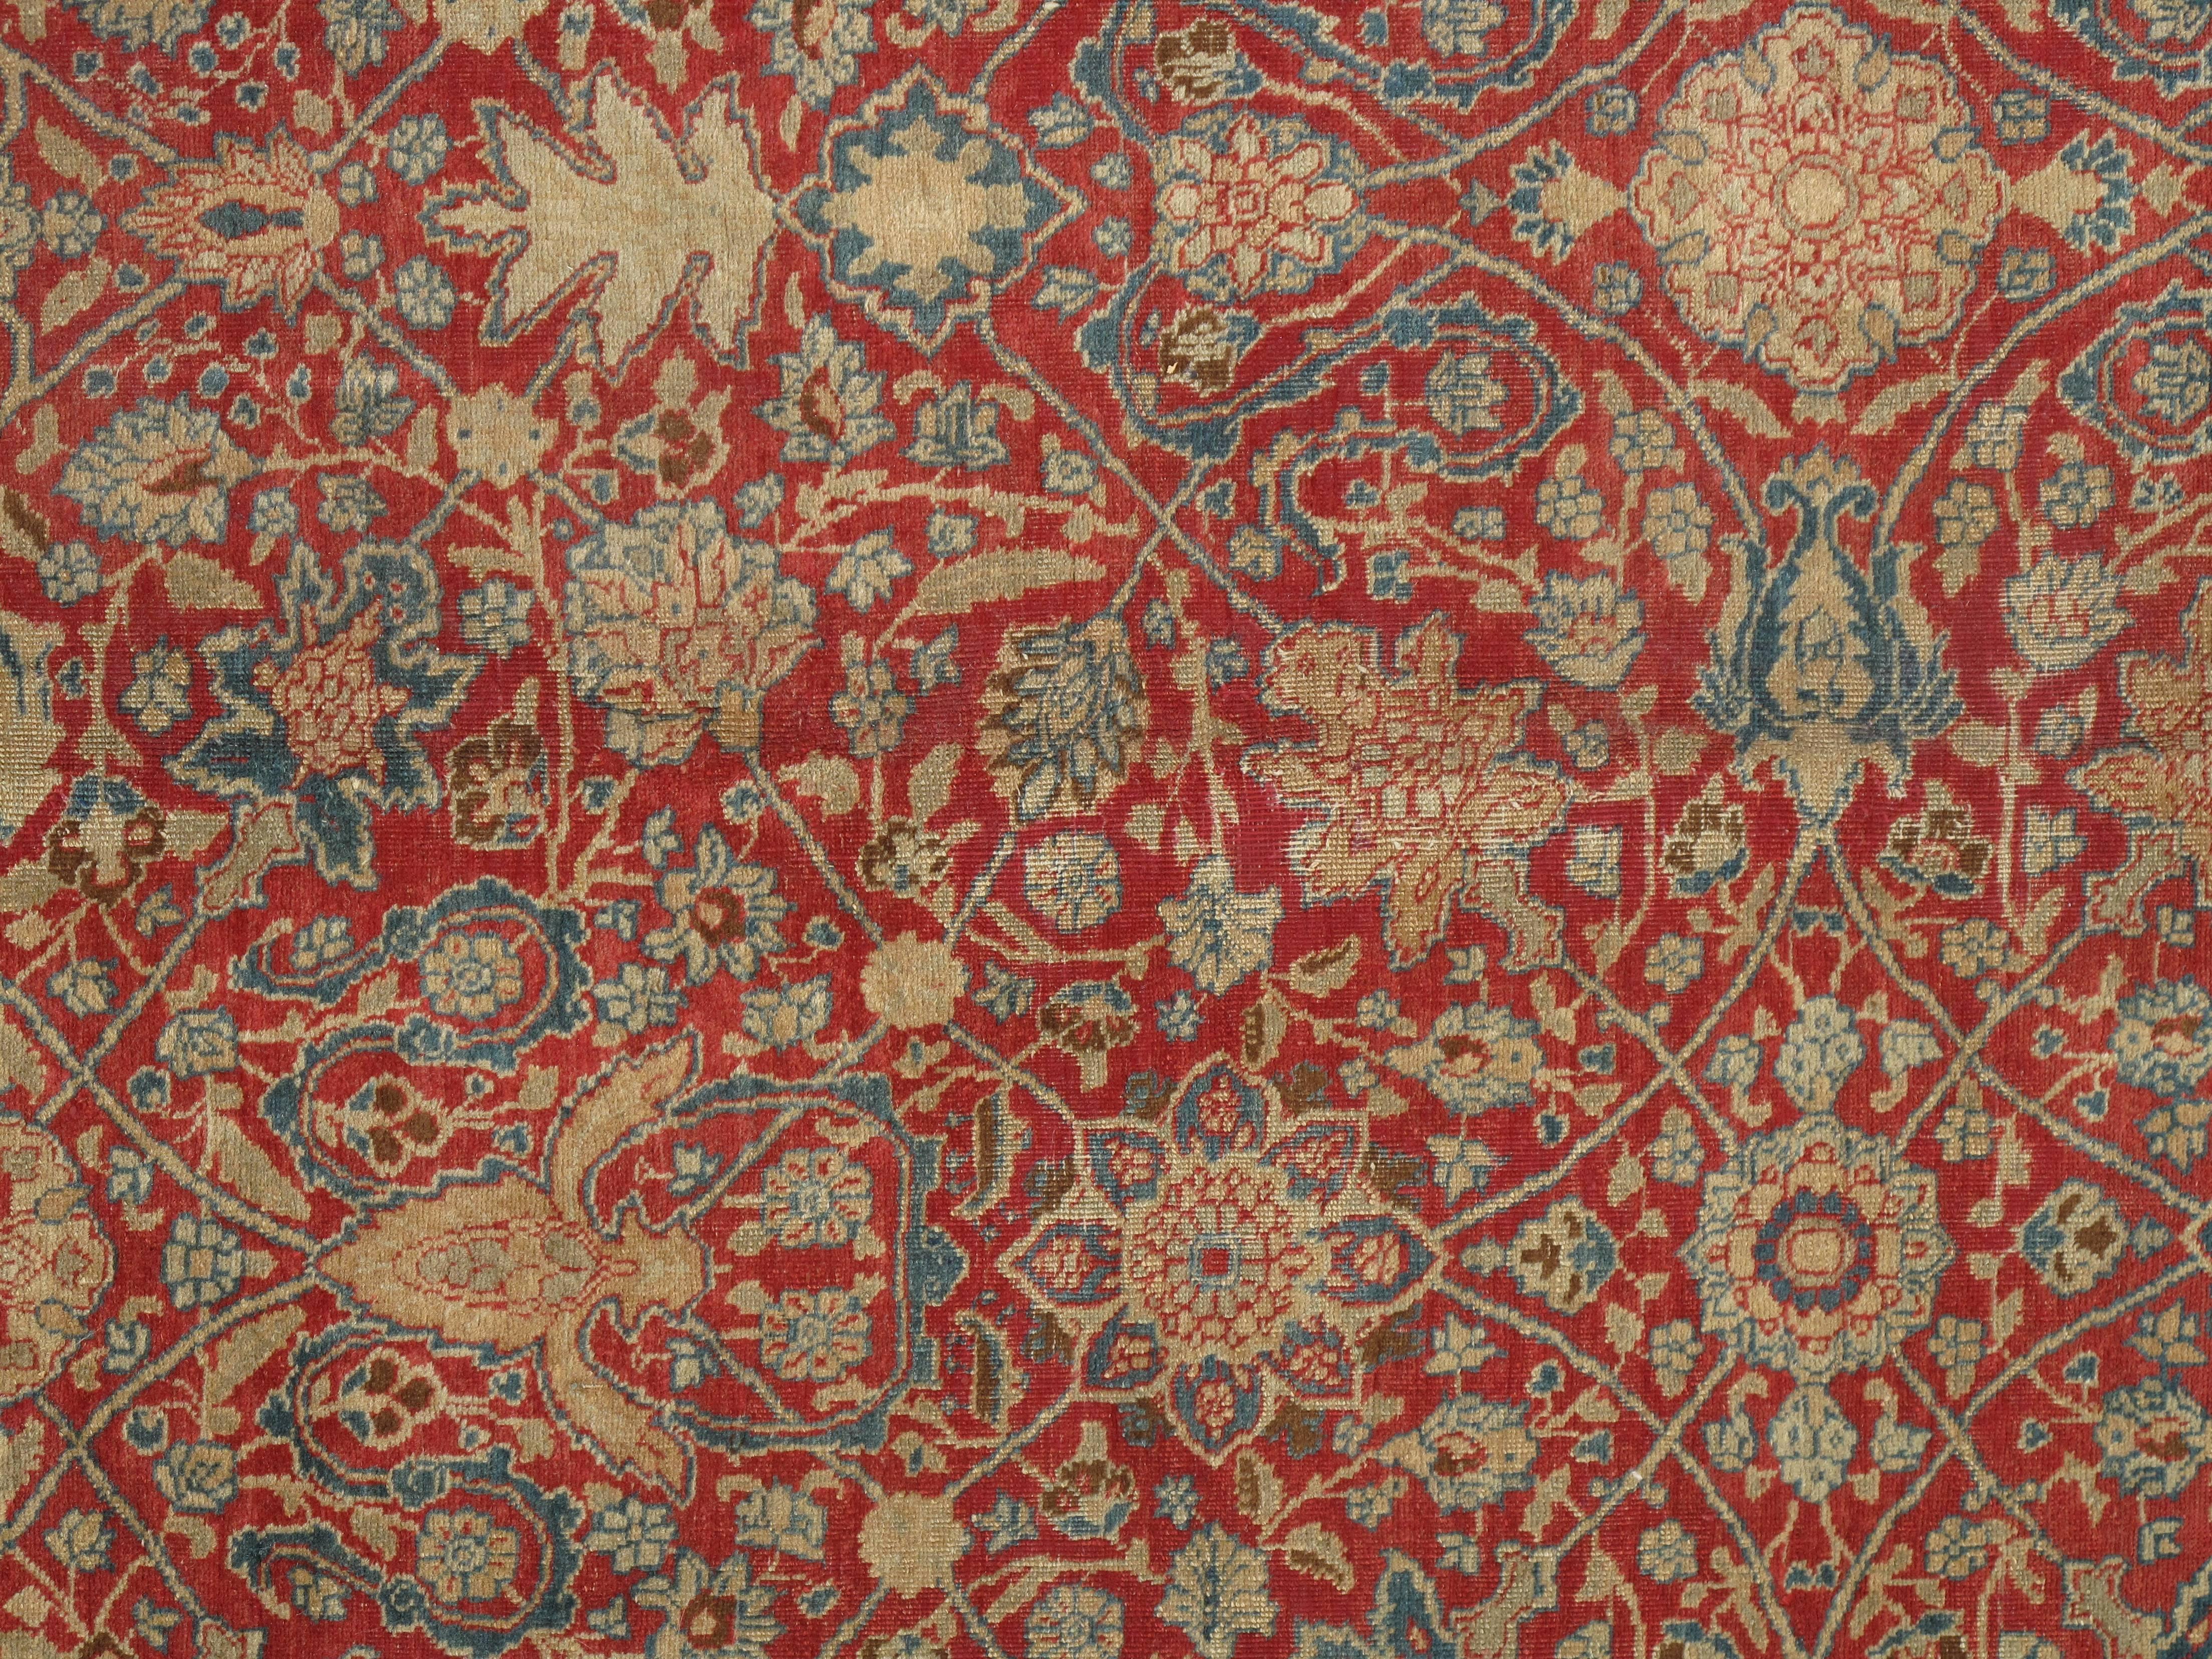 Antike Täbris-Teppiche zeichnen sich durch ihre hervorragende Knüpfung und ihre bemerkenswerte Beibehaltung der klassischen Traditionen des persischen Teppichdesigns aus. Die im Nordwesten Persiens gelegene Stadt Täbris war die erste Hauptstadt der